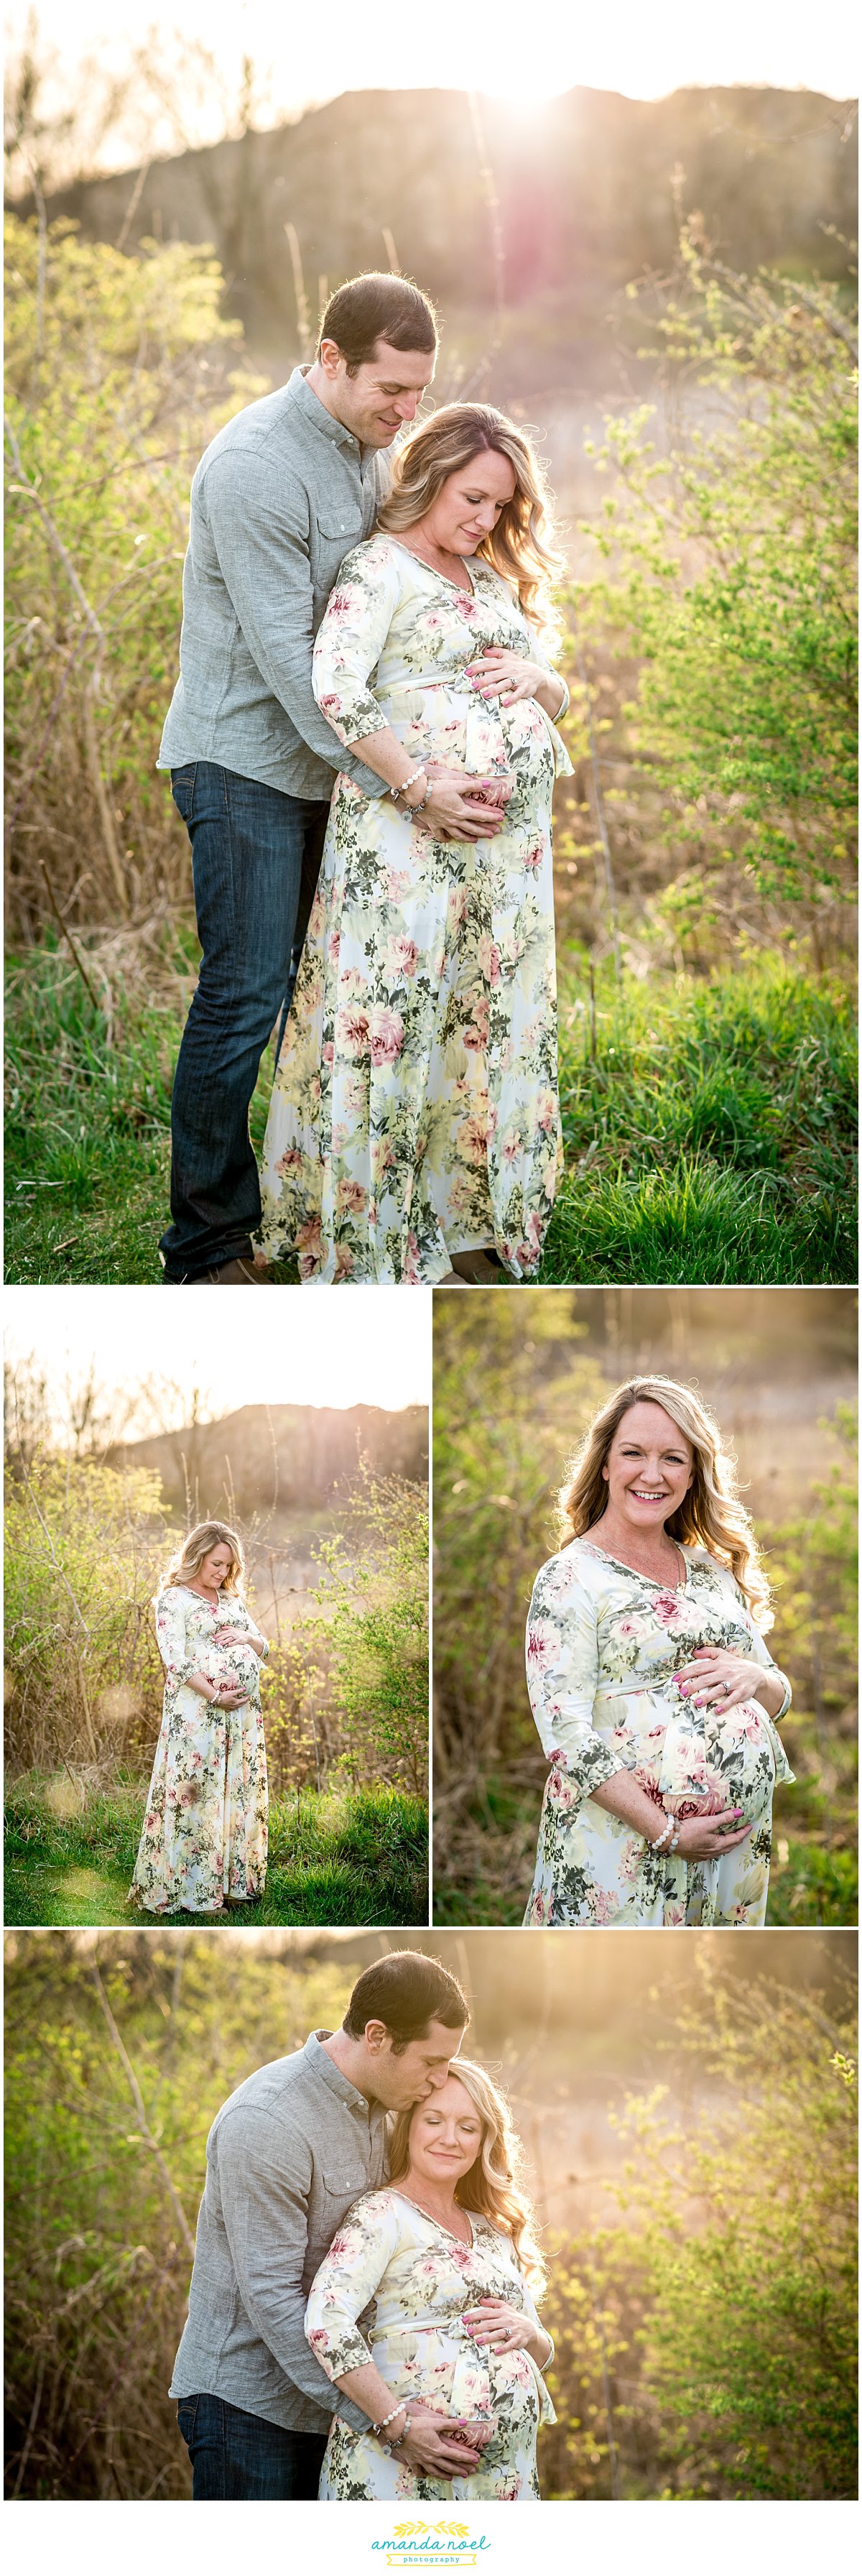 Dayton Ohio maternity photographer | Amanda Noel Photography | Spring sunset maternity session